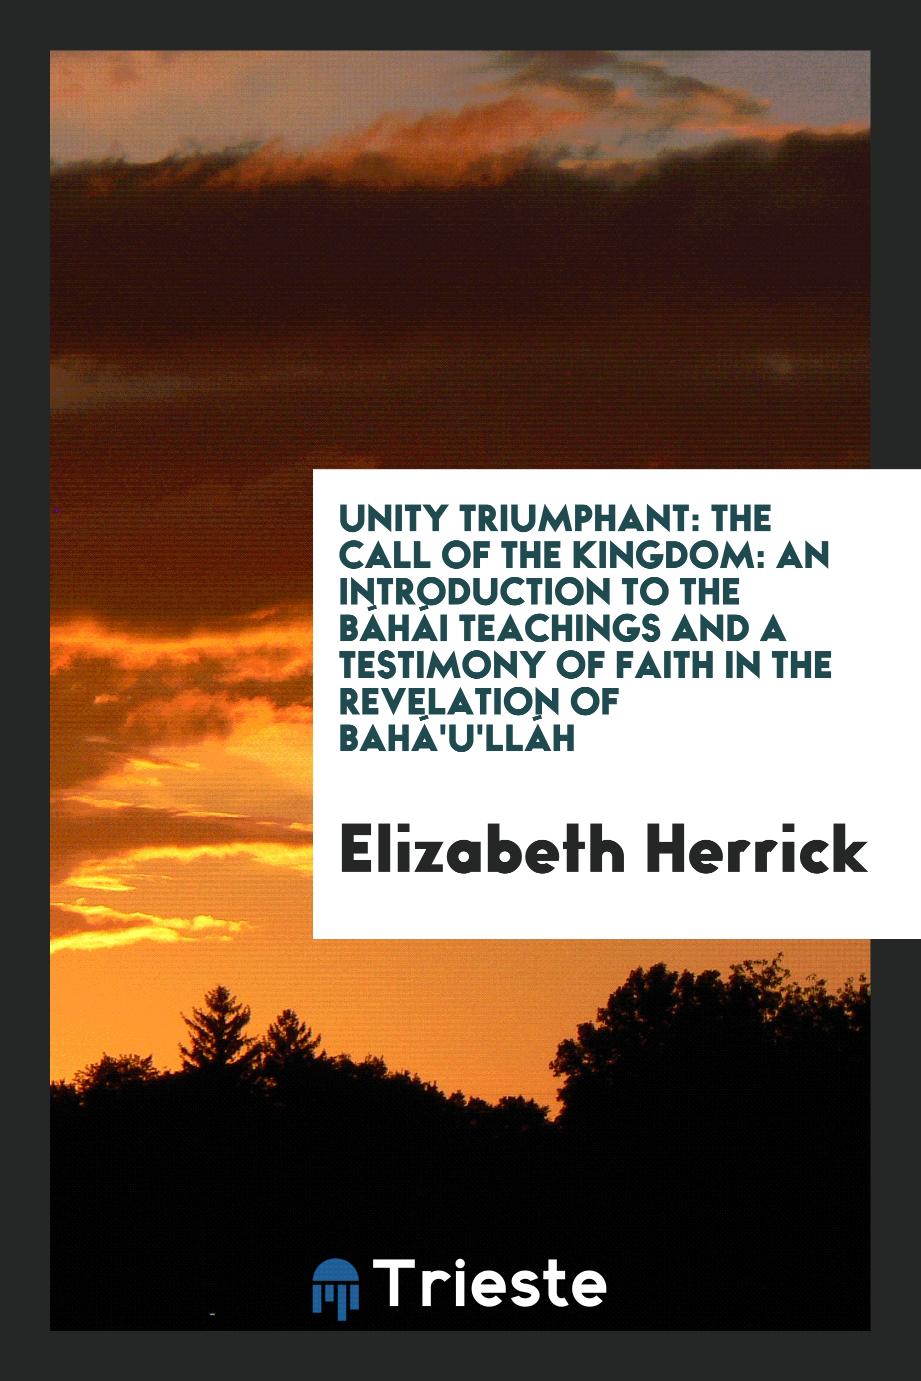 Unity triumphant: the call of the kingdom: an introduction to the Báhái teachings and a testimony of faith in the revelation of Bahá'u'lláh